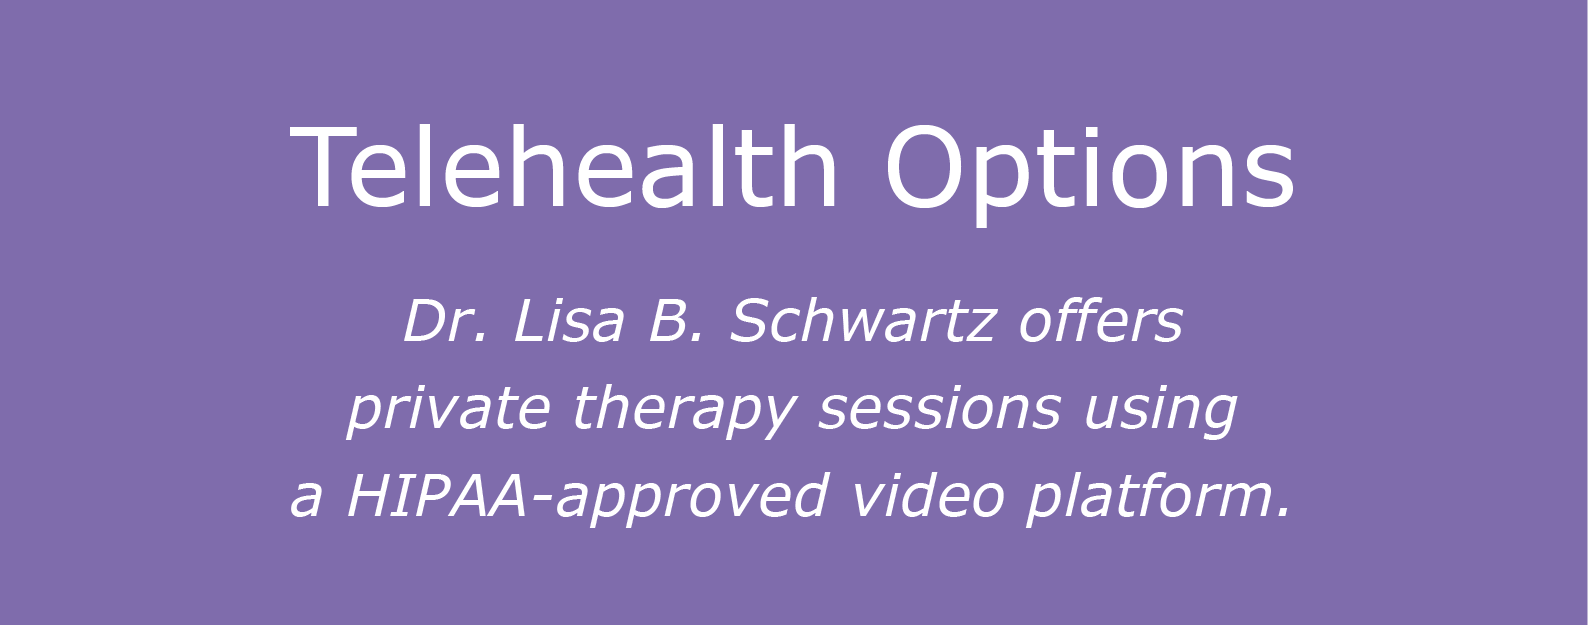 Dr. Lisa B. Schwartz offers telehealth